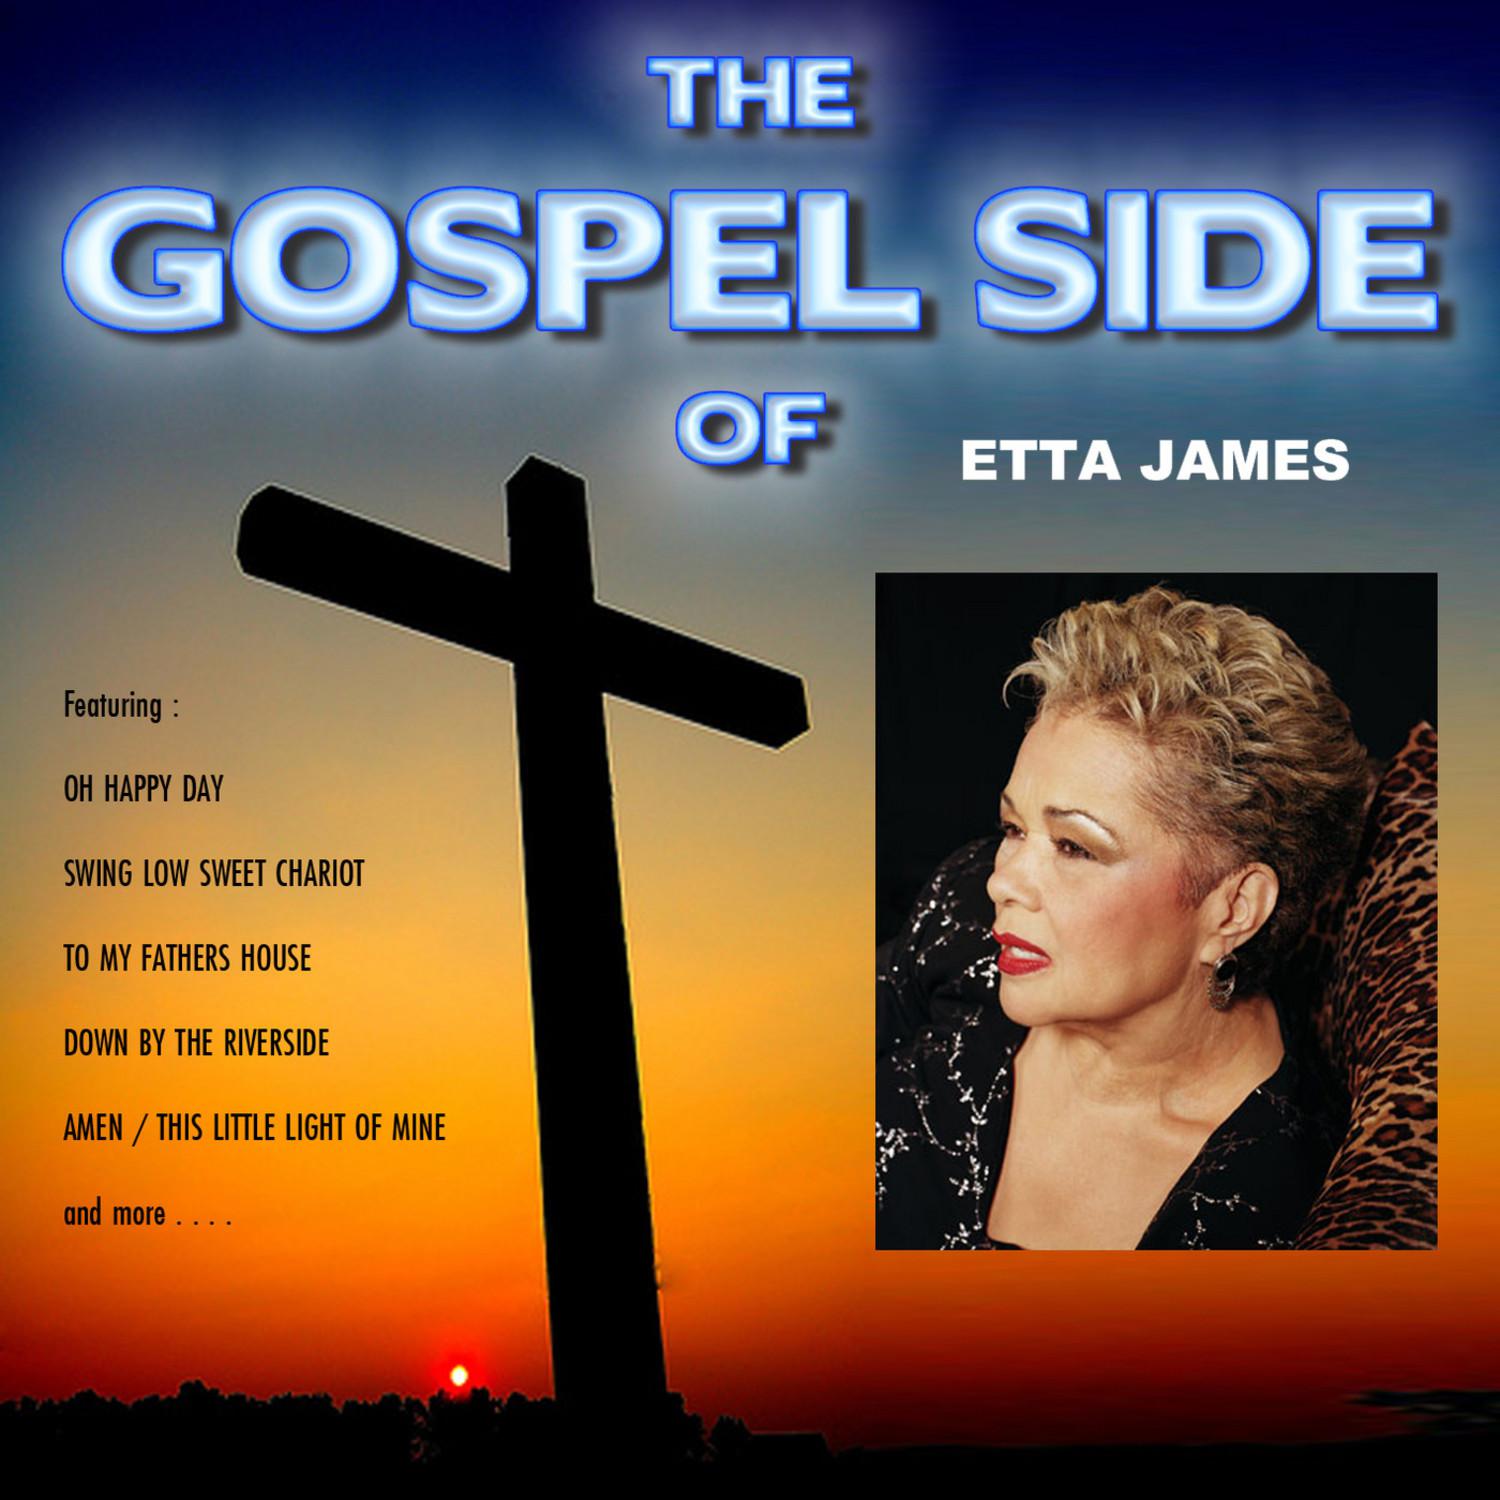 The Gospel Side of Etta James